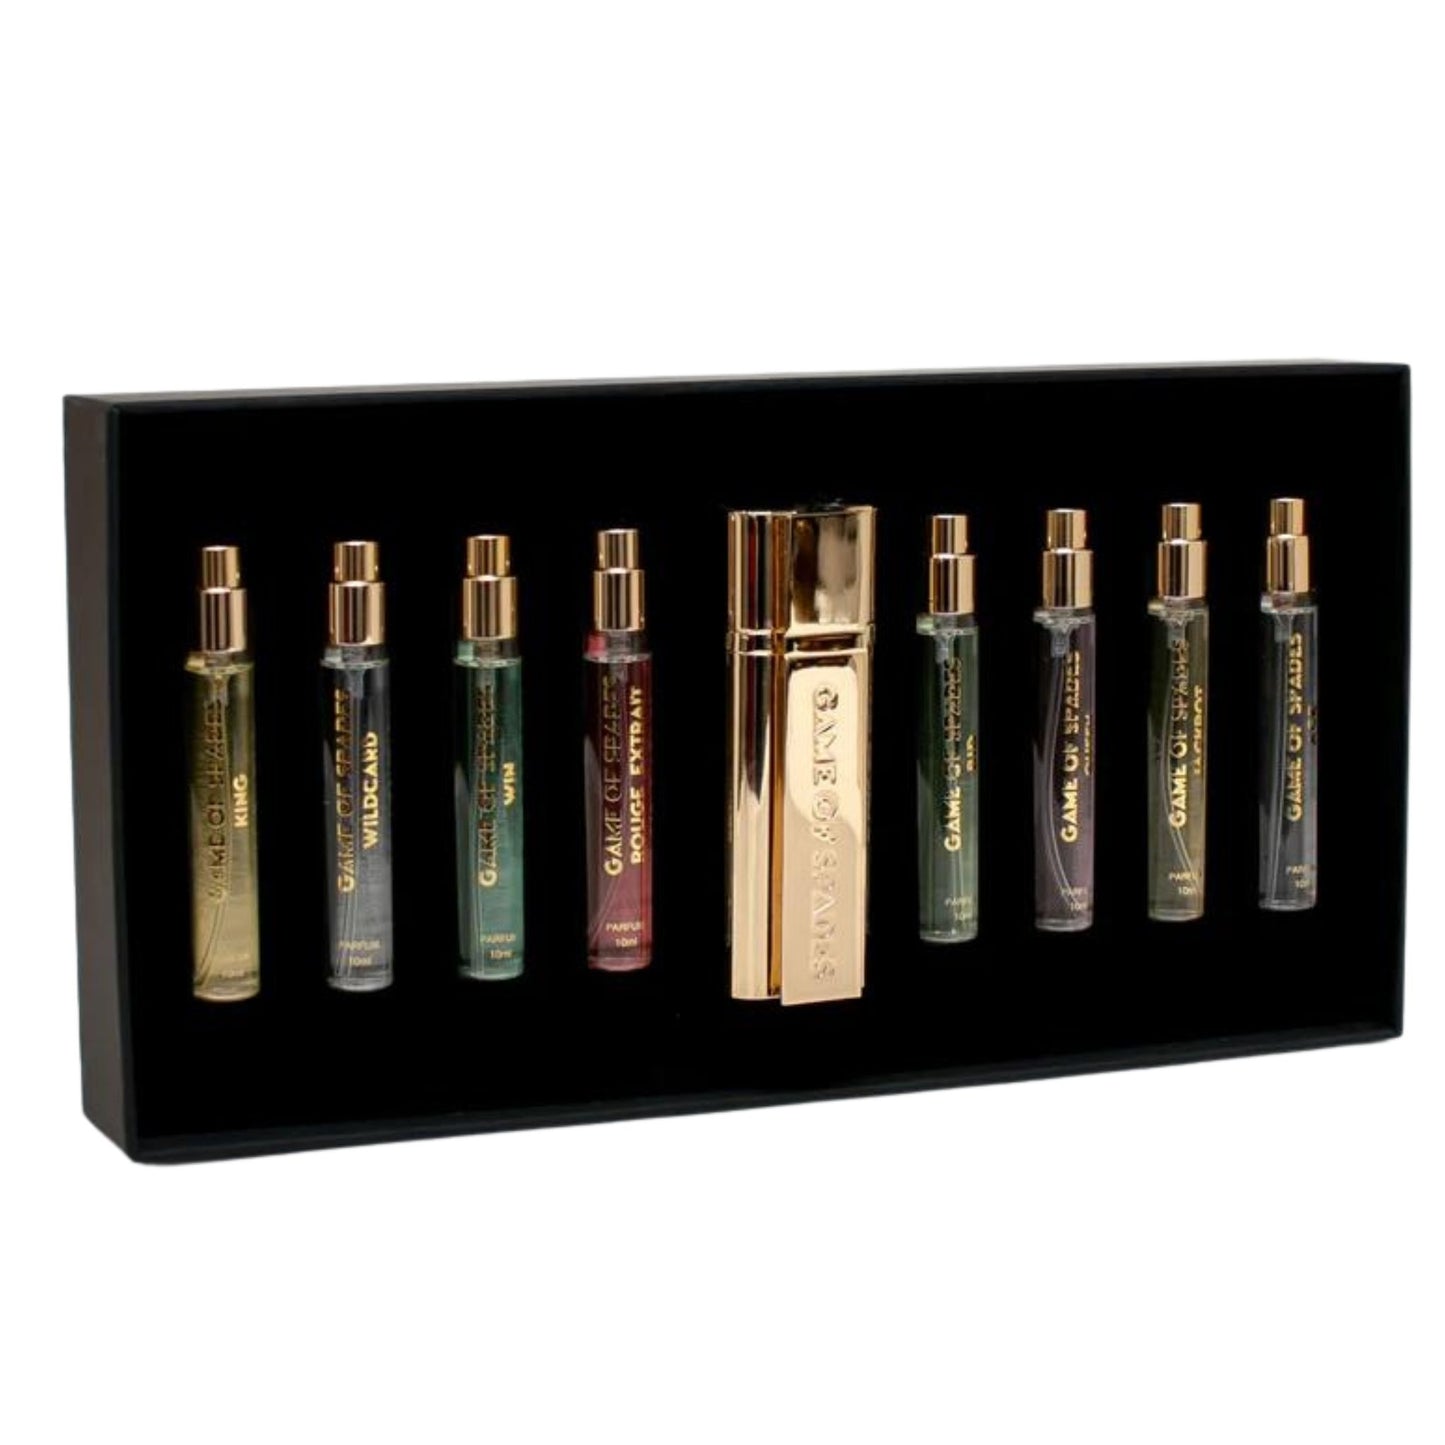 Jo Milano Game Of Spades Parfum Set De 9 Pz Unisex